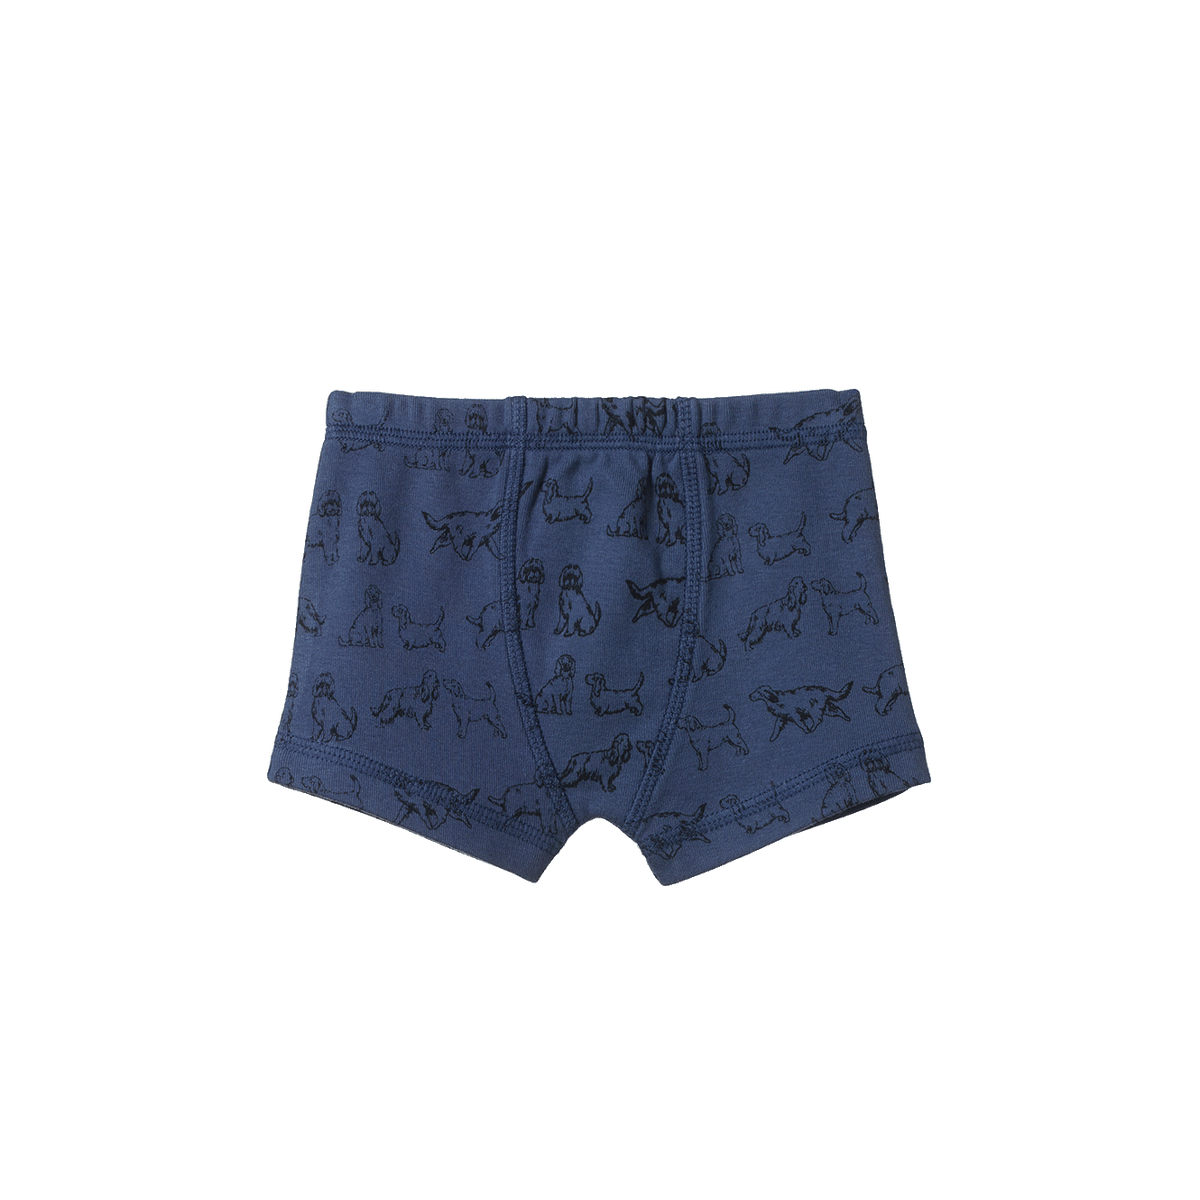 Boxer Shorts || Dog Days Vintage Indigo